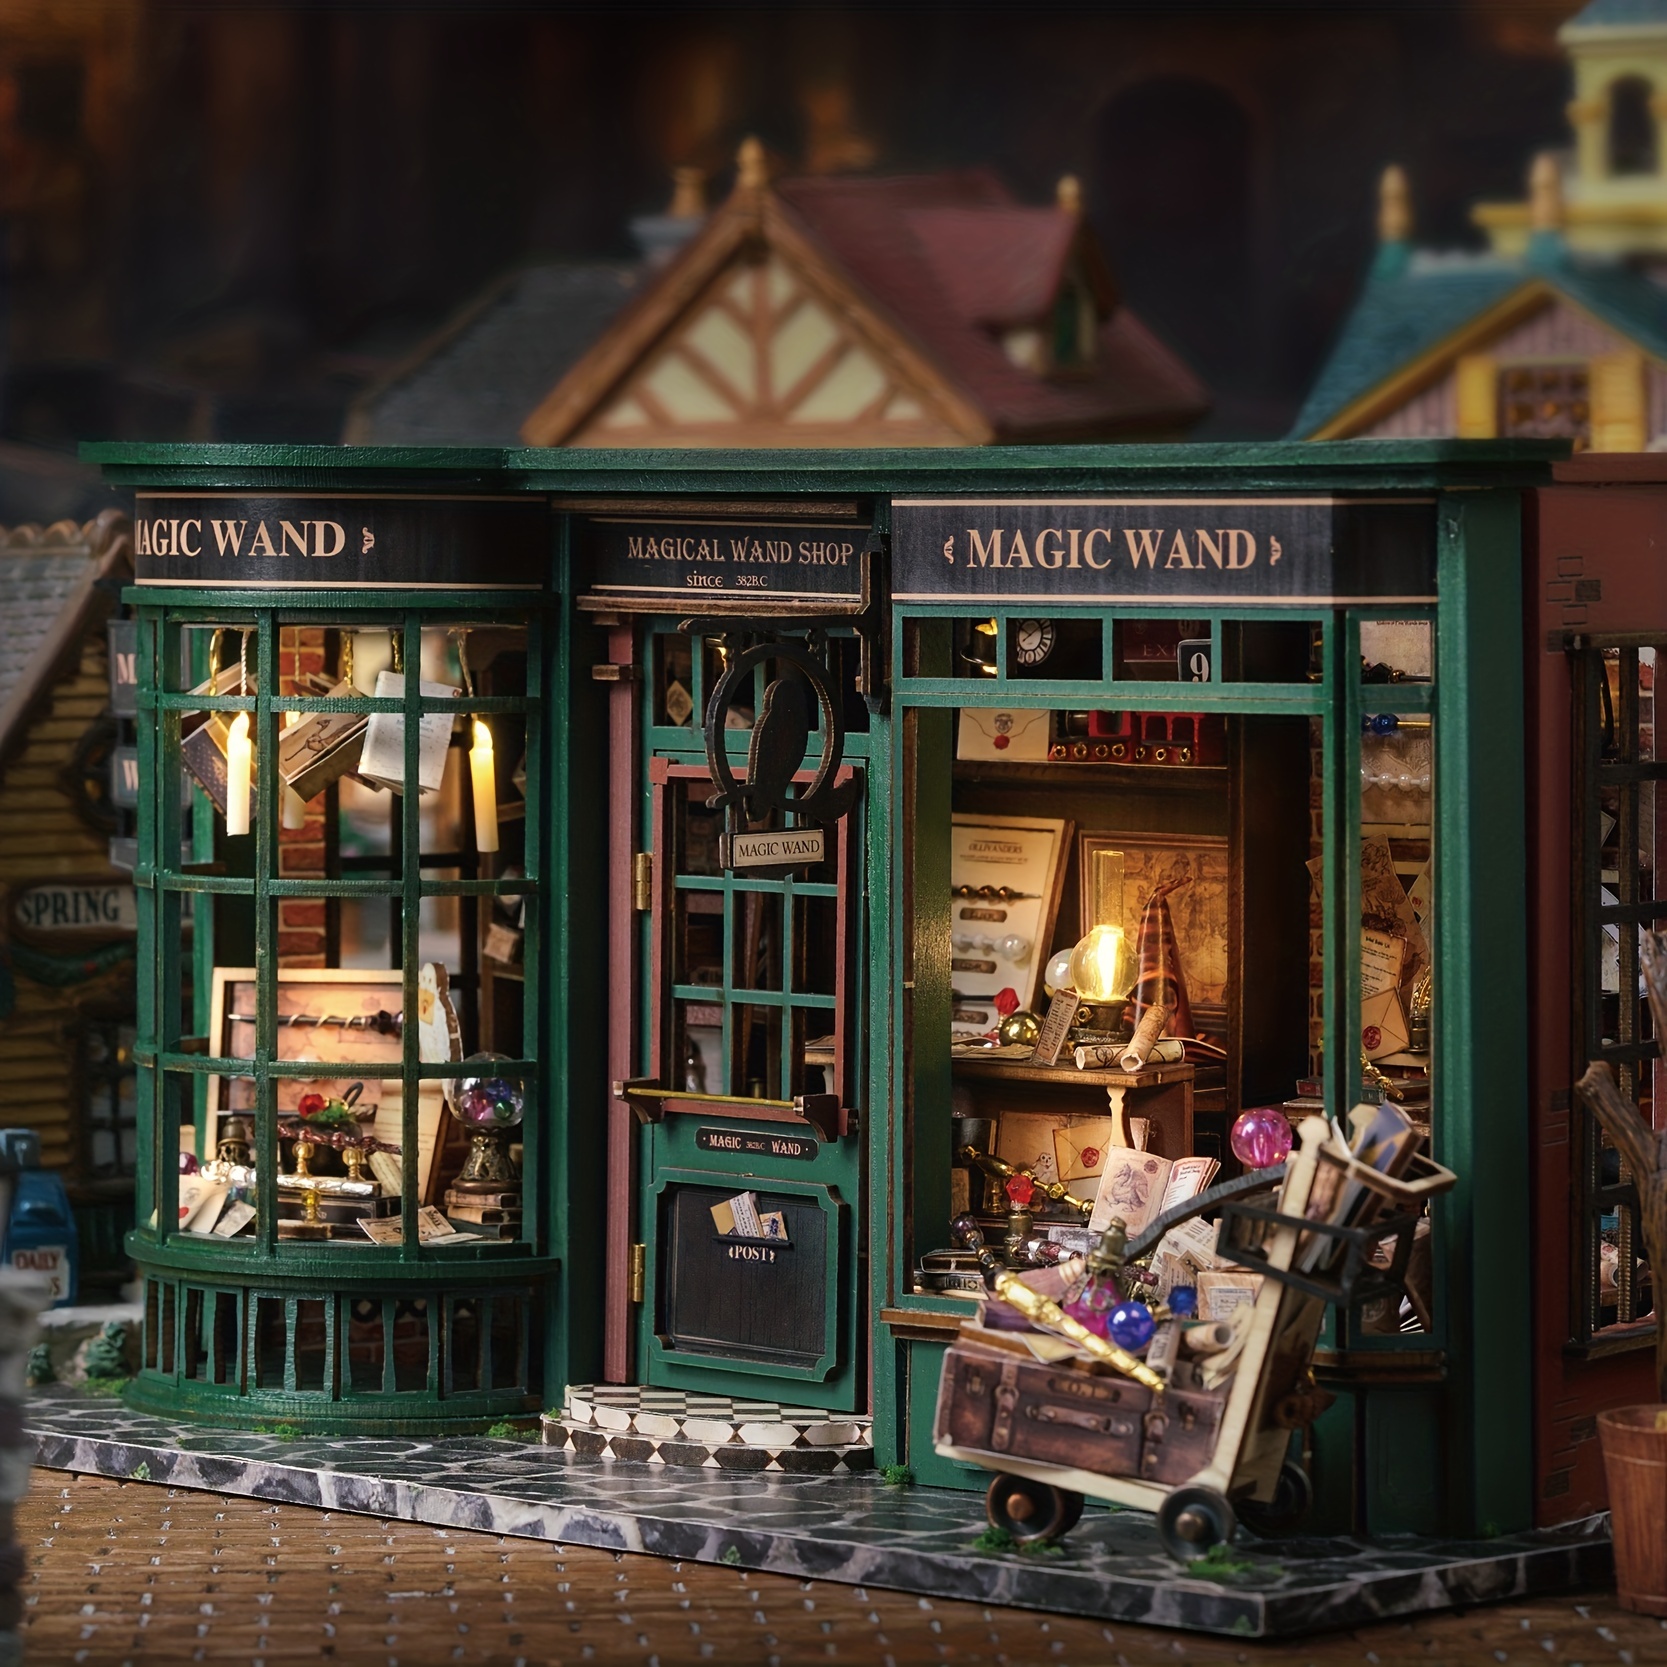 HEVIRGO bricolage Puzzle maison feuille anti-poussière en bois Puzzle jouet  3D Dessert boutique Miniature maison de poupée accessoires enfants cadeau 